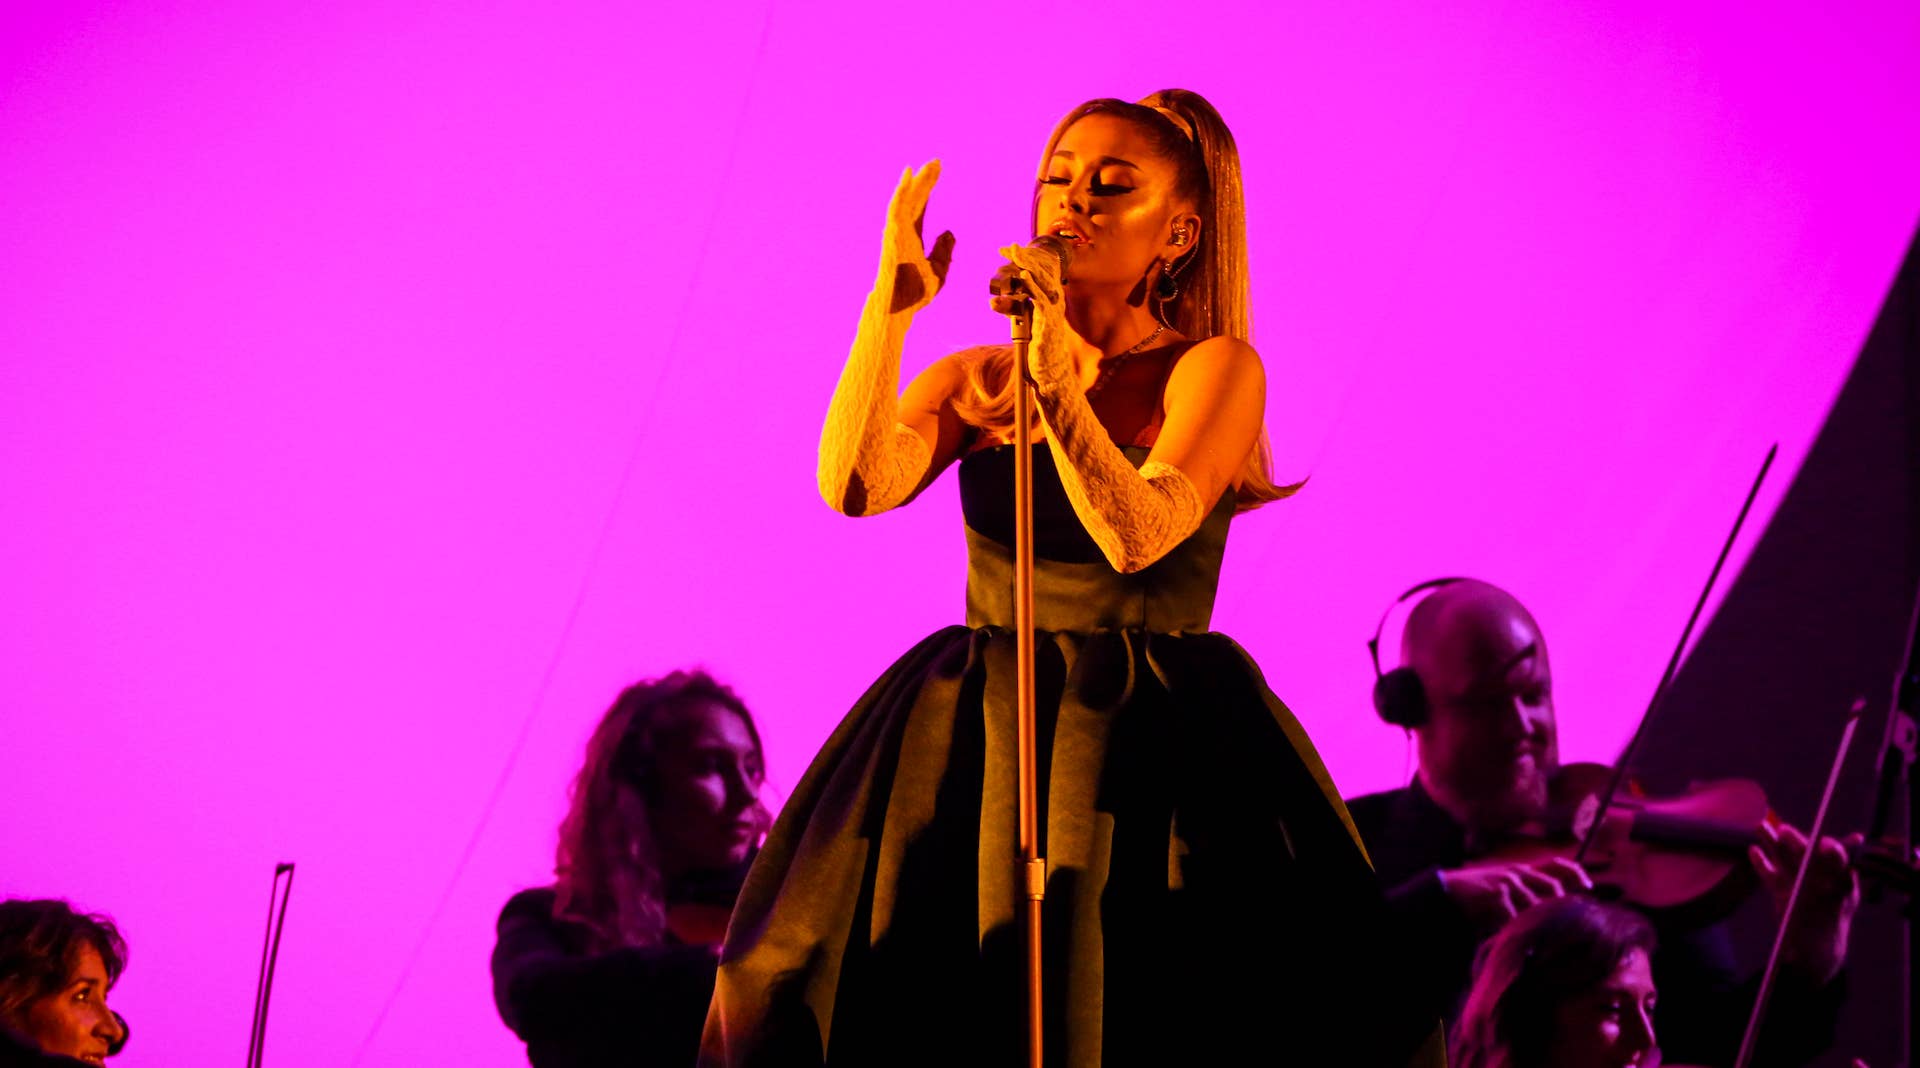 Ariana Grande performing at 2020 Grammy Awards